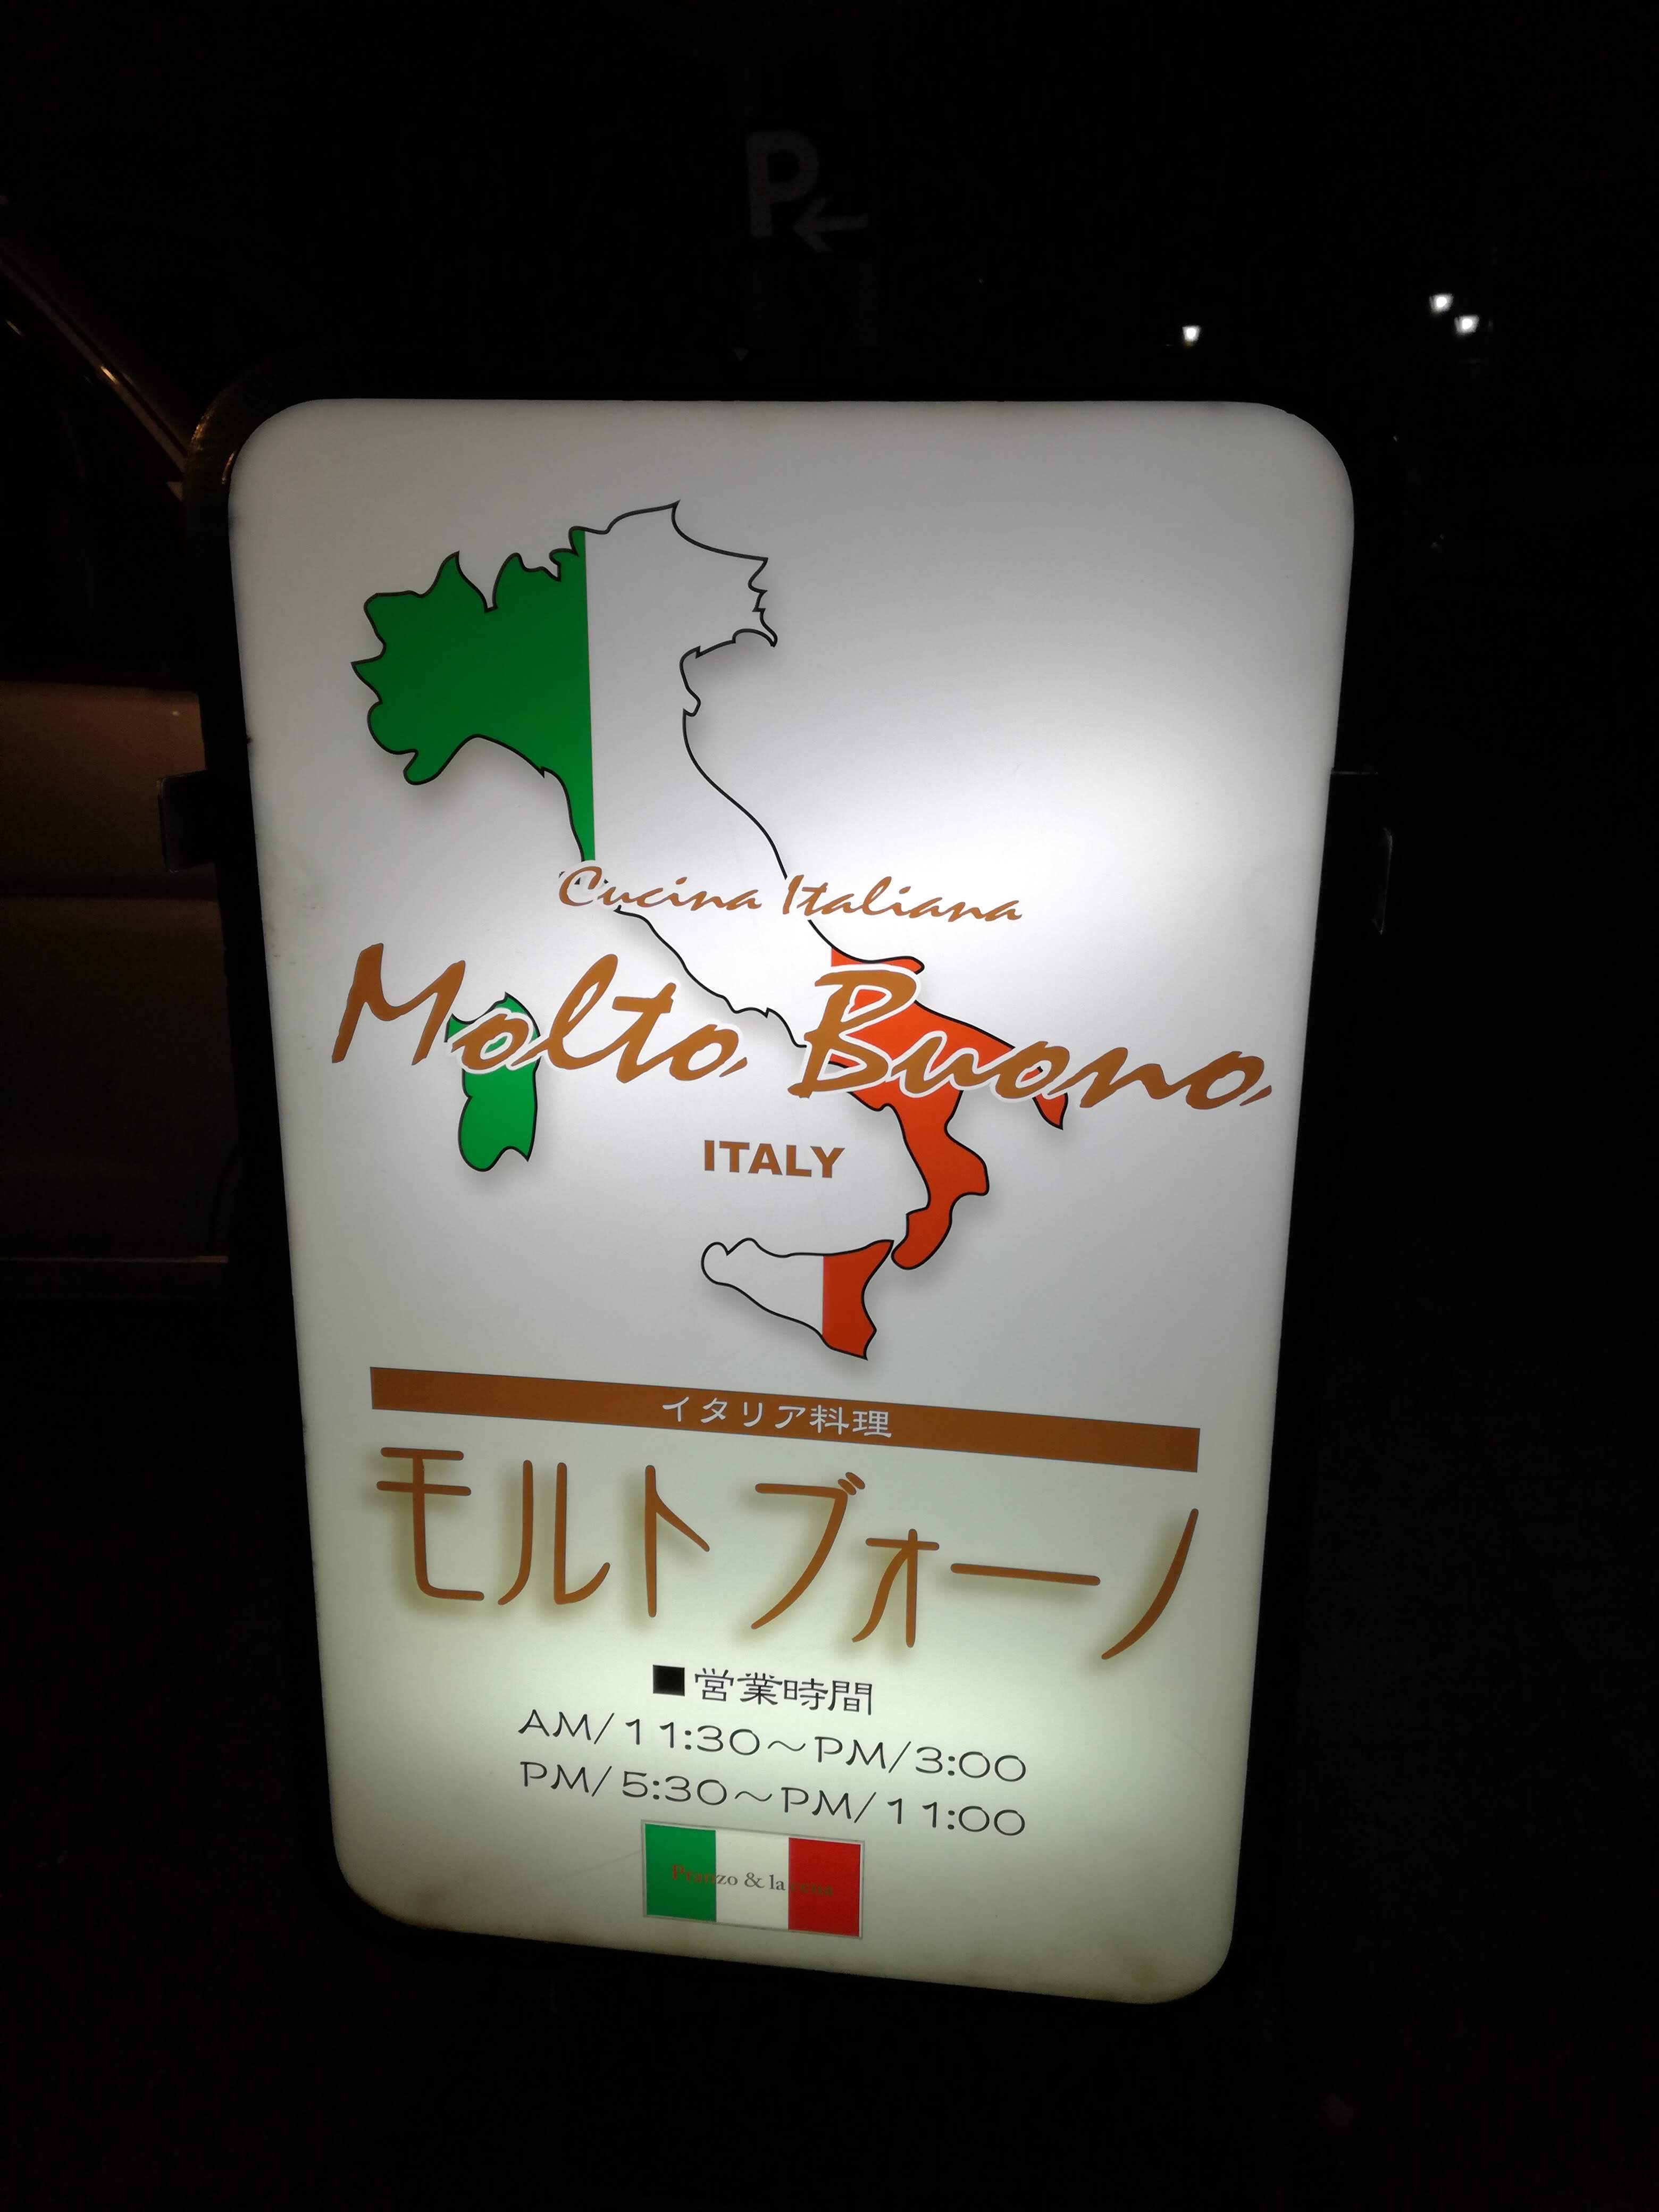 素敵なイタリアレストラン"モルトブォーノ"